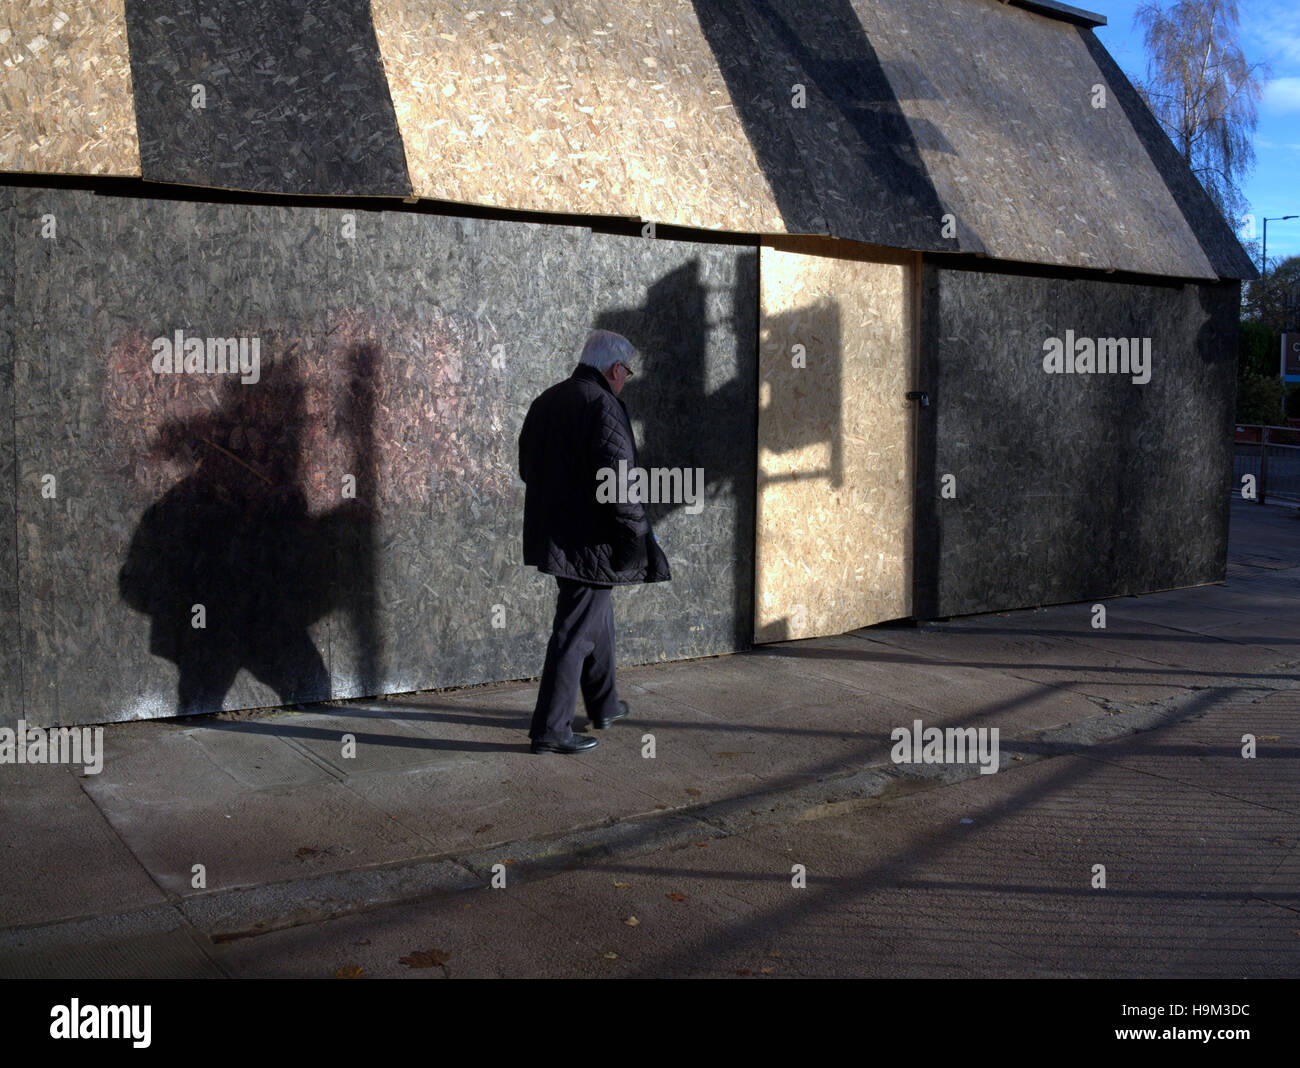 Basso sole invernale su Urban singola persona camminare da solo le ombre del semaforo Foto Stock